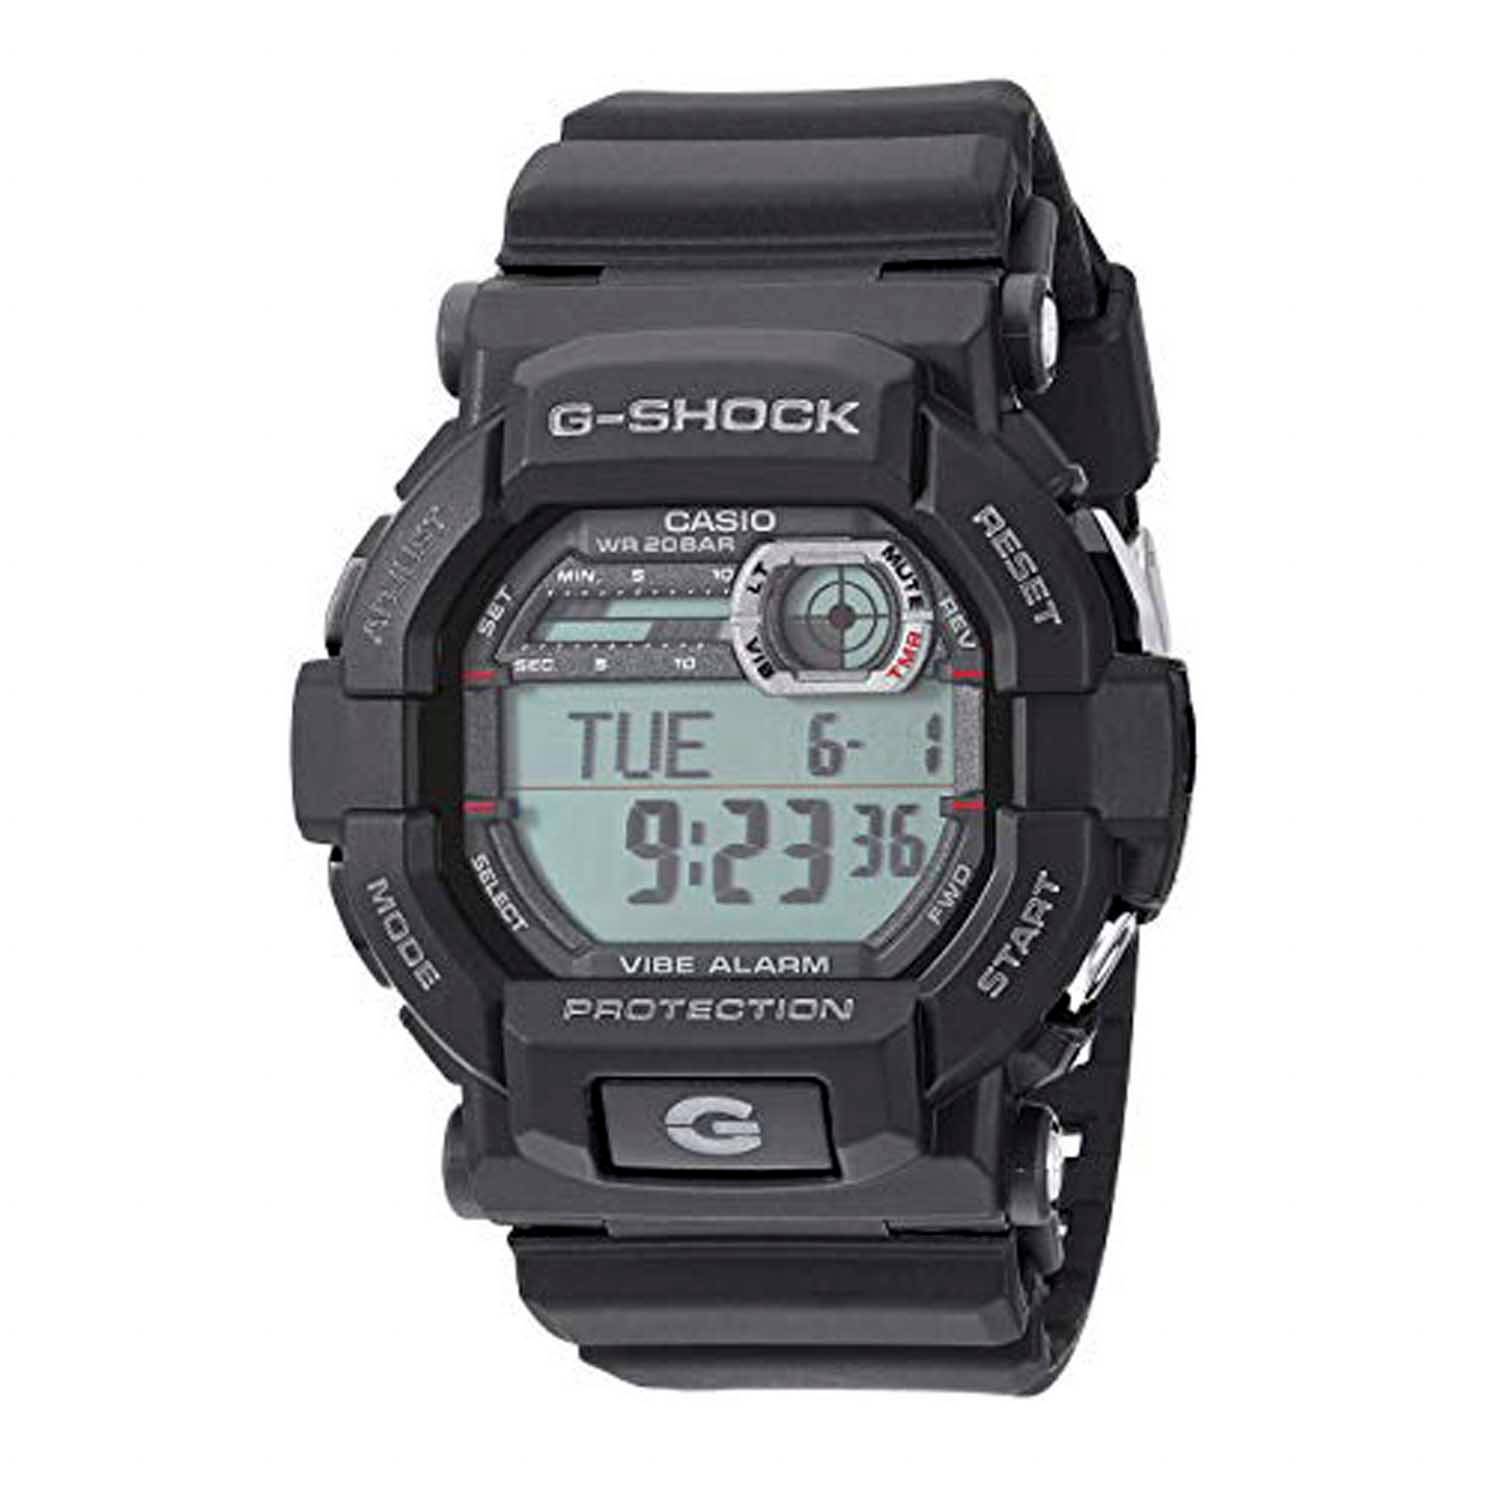 Casio G-Shock GD350-1CR Digital Watch